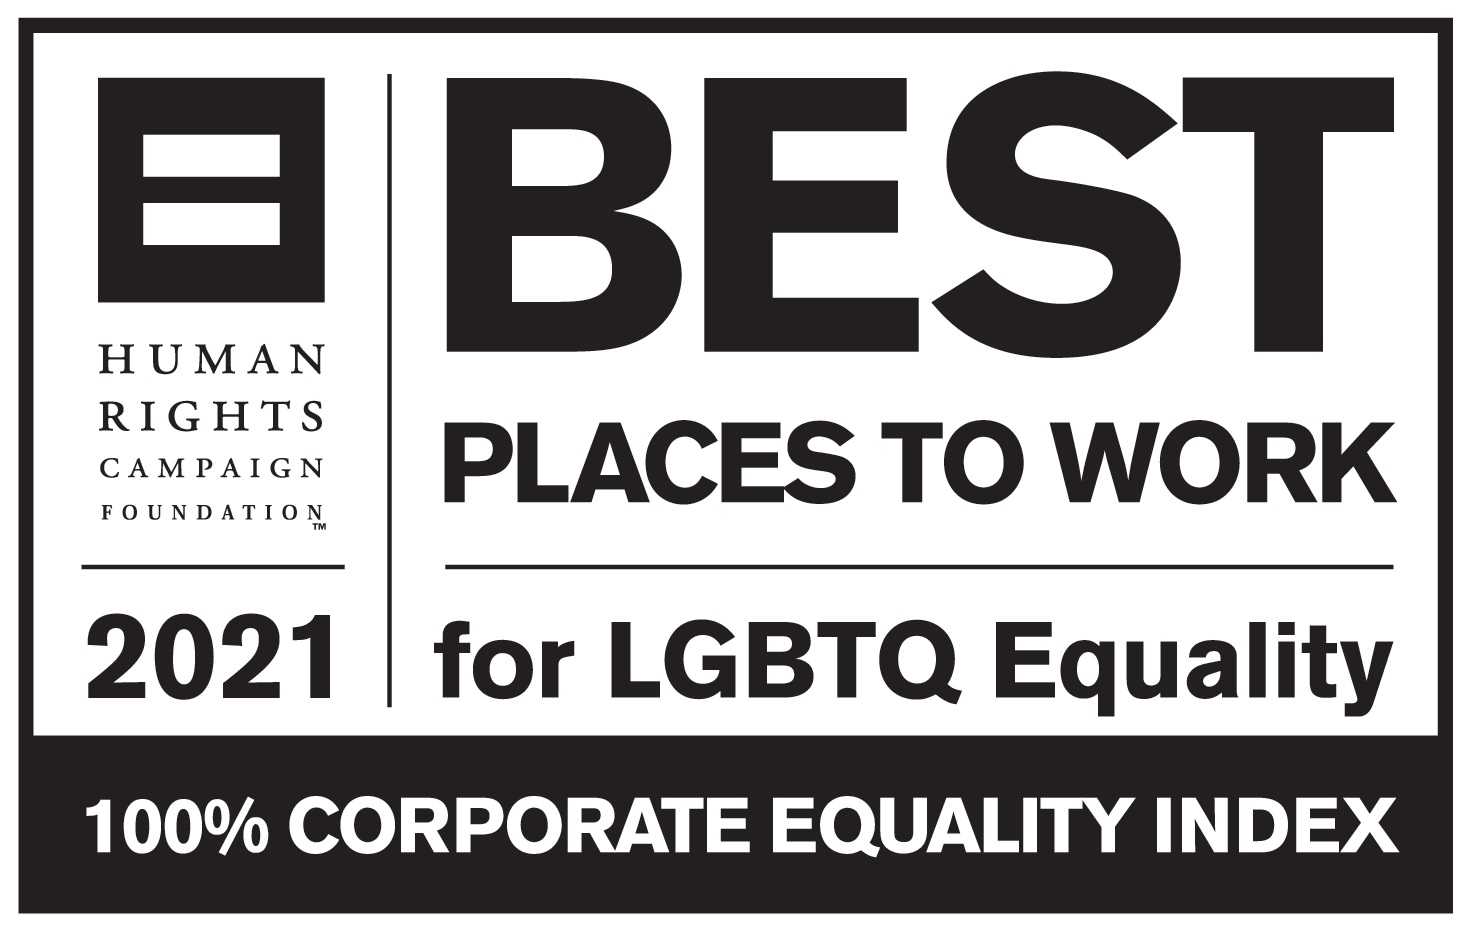 Uno de los mejores entornos laborales donde hay igualdad para LGBT